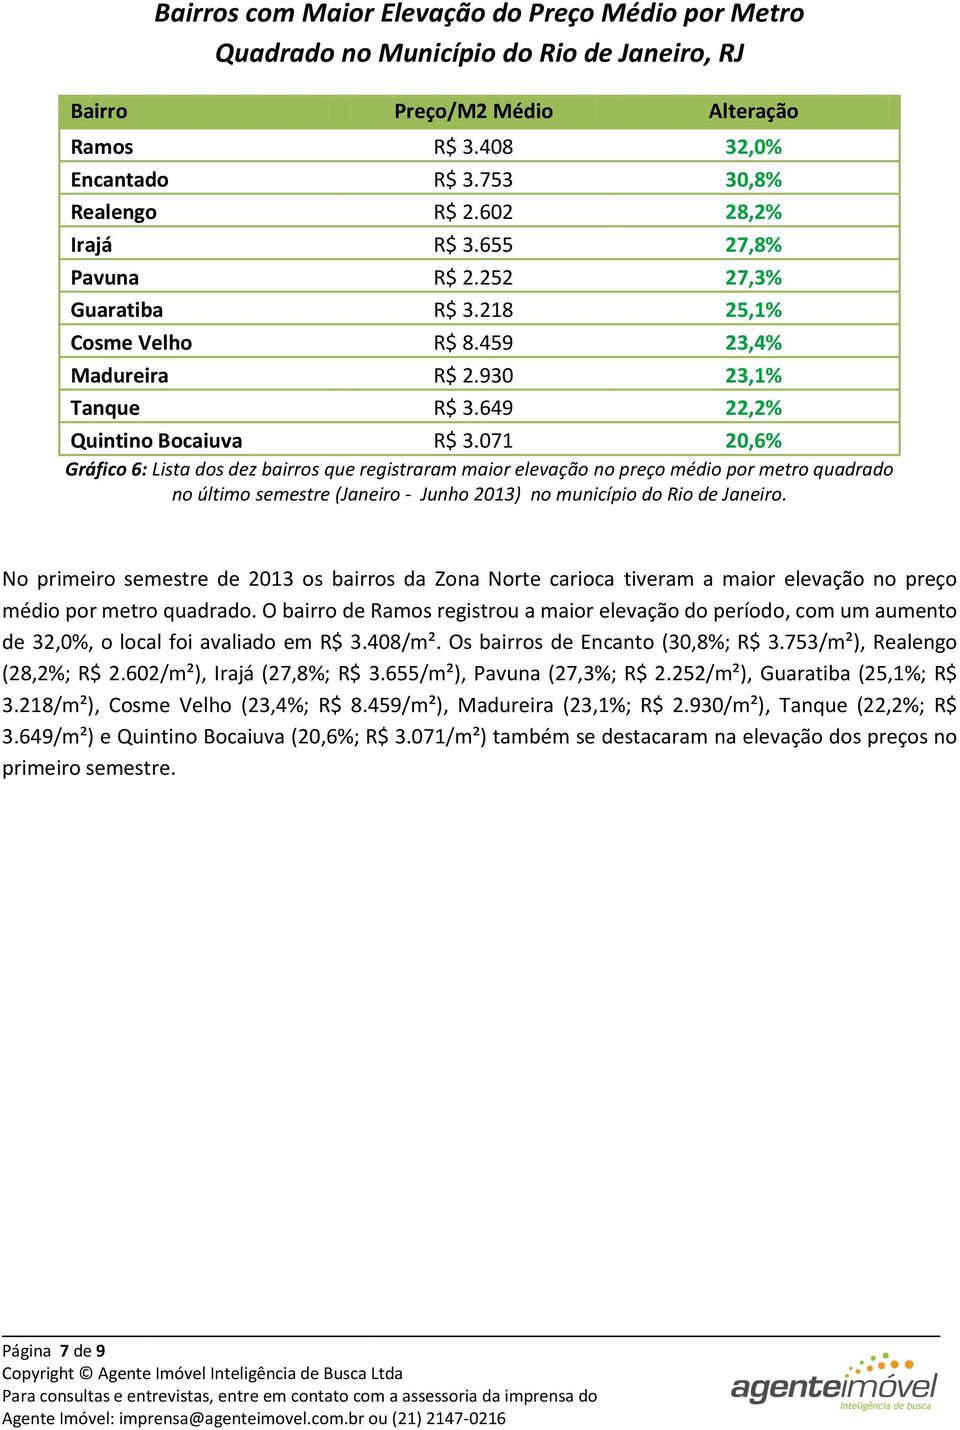 071 20,6% Gráfico 6: Lista dos dez bairros que registraram maior elevação no preço médio por metro quadrado no último semestre (Janeiro - Junho 2013) no município do Rio de Janeiro.